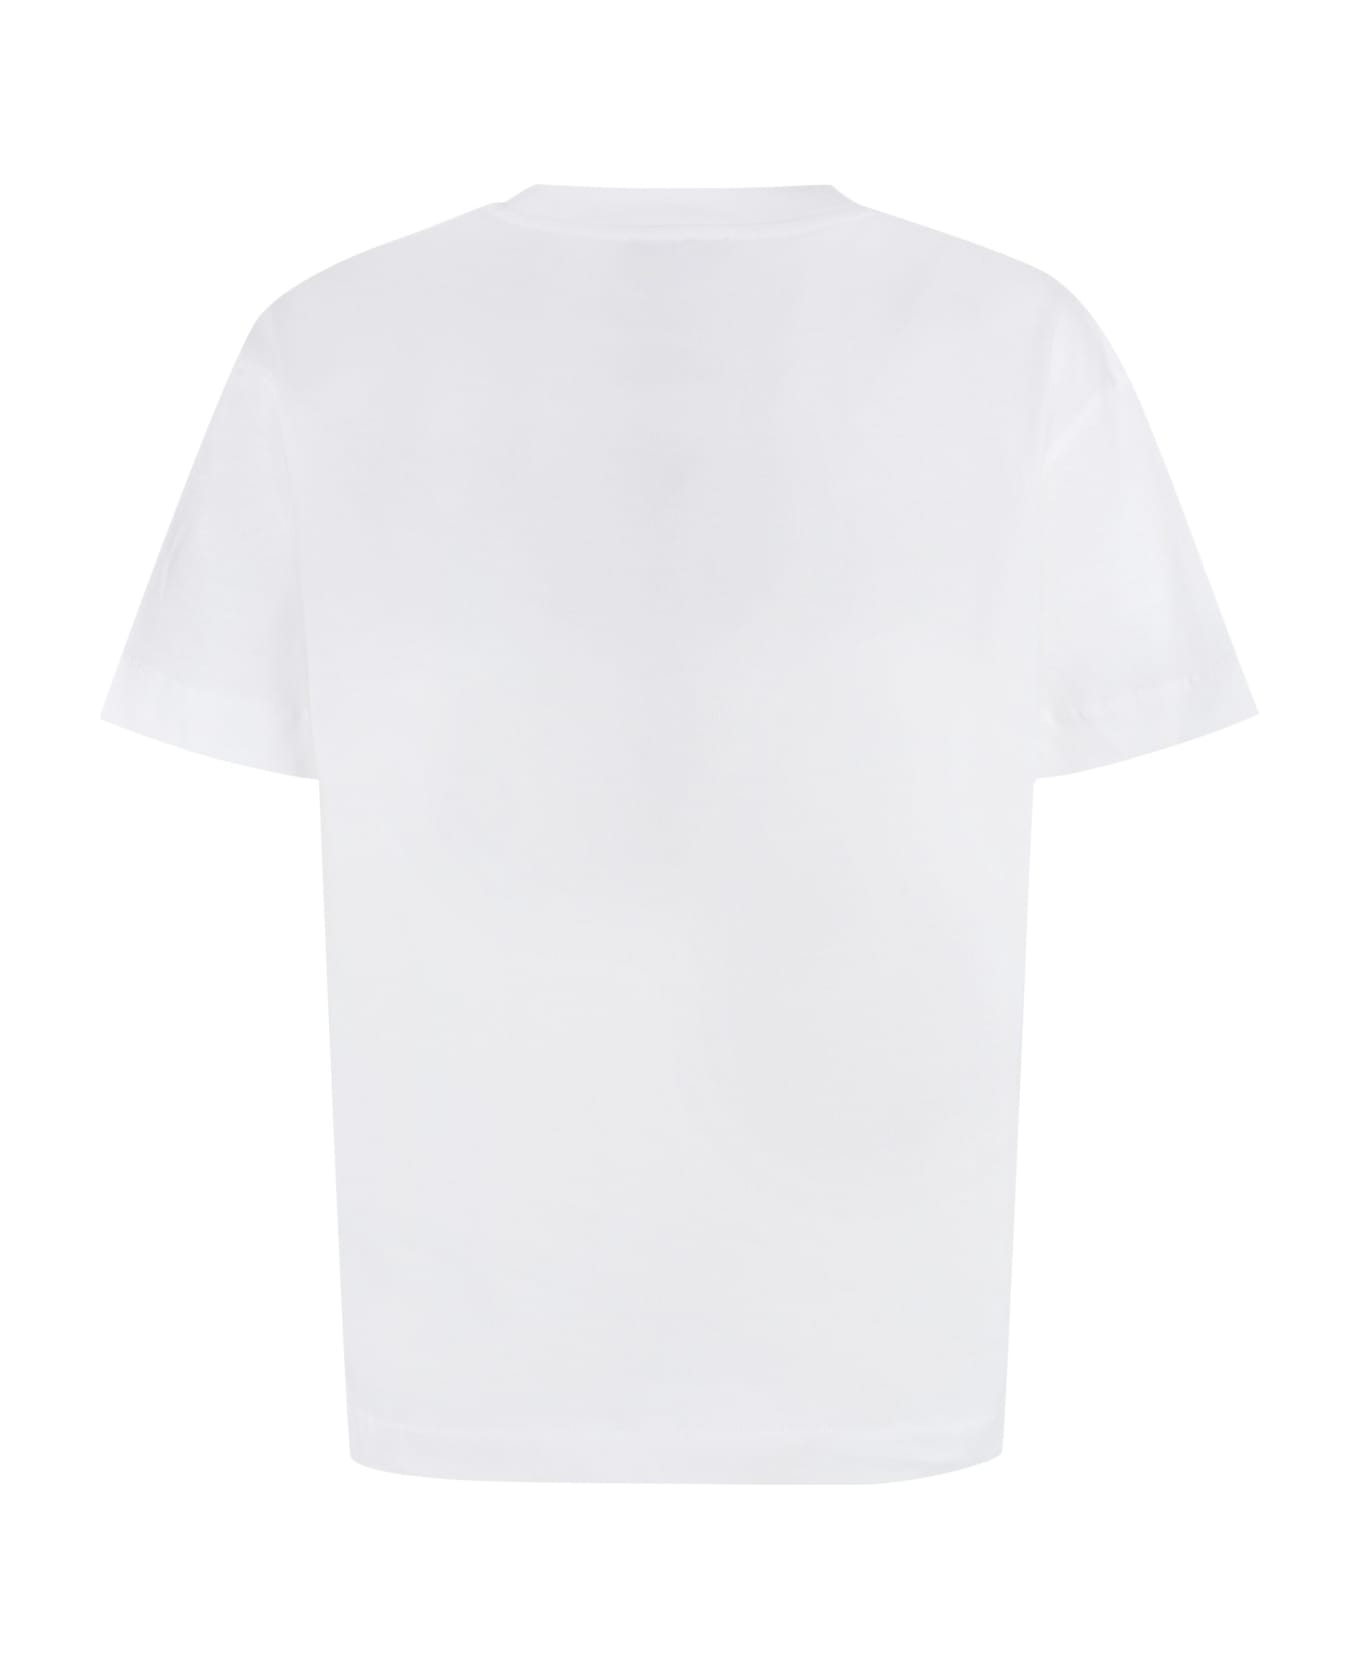 A.P.C. Cotton Crew-neck T-shirt - White